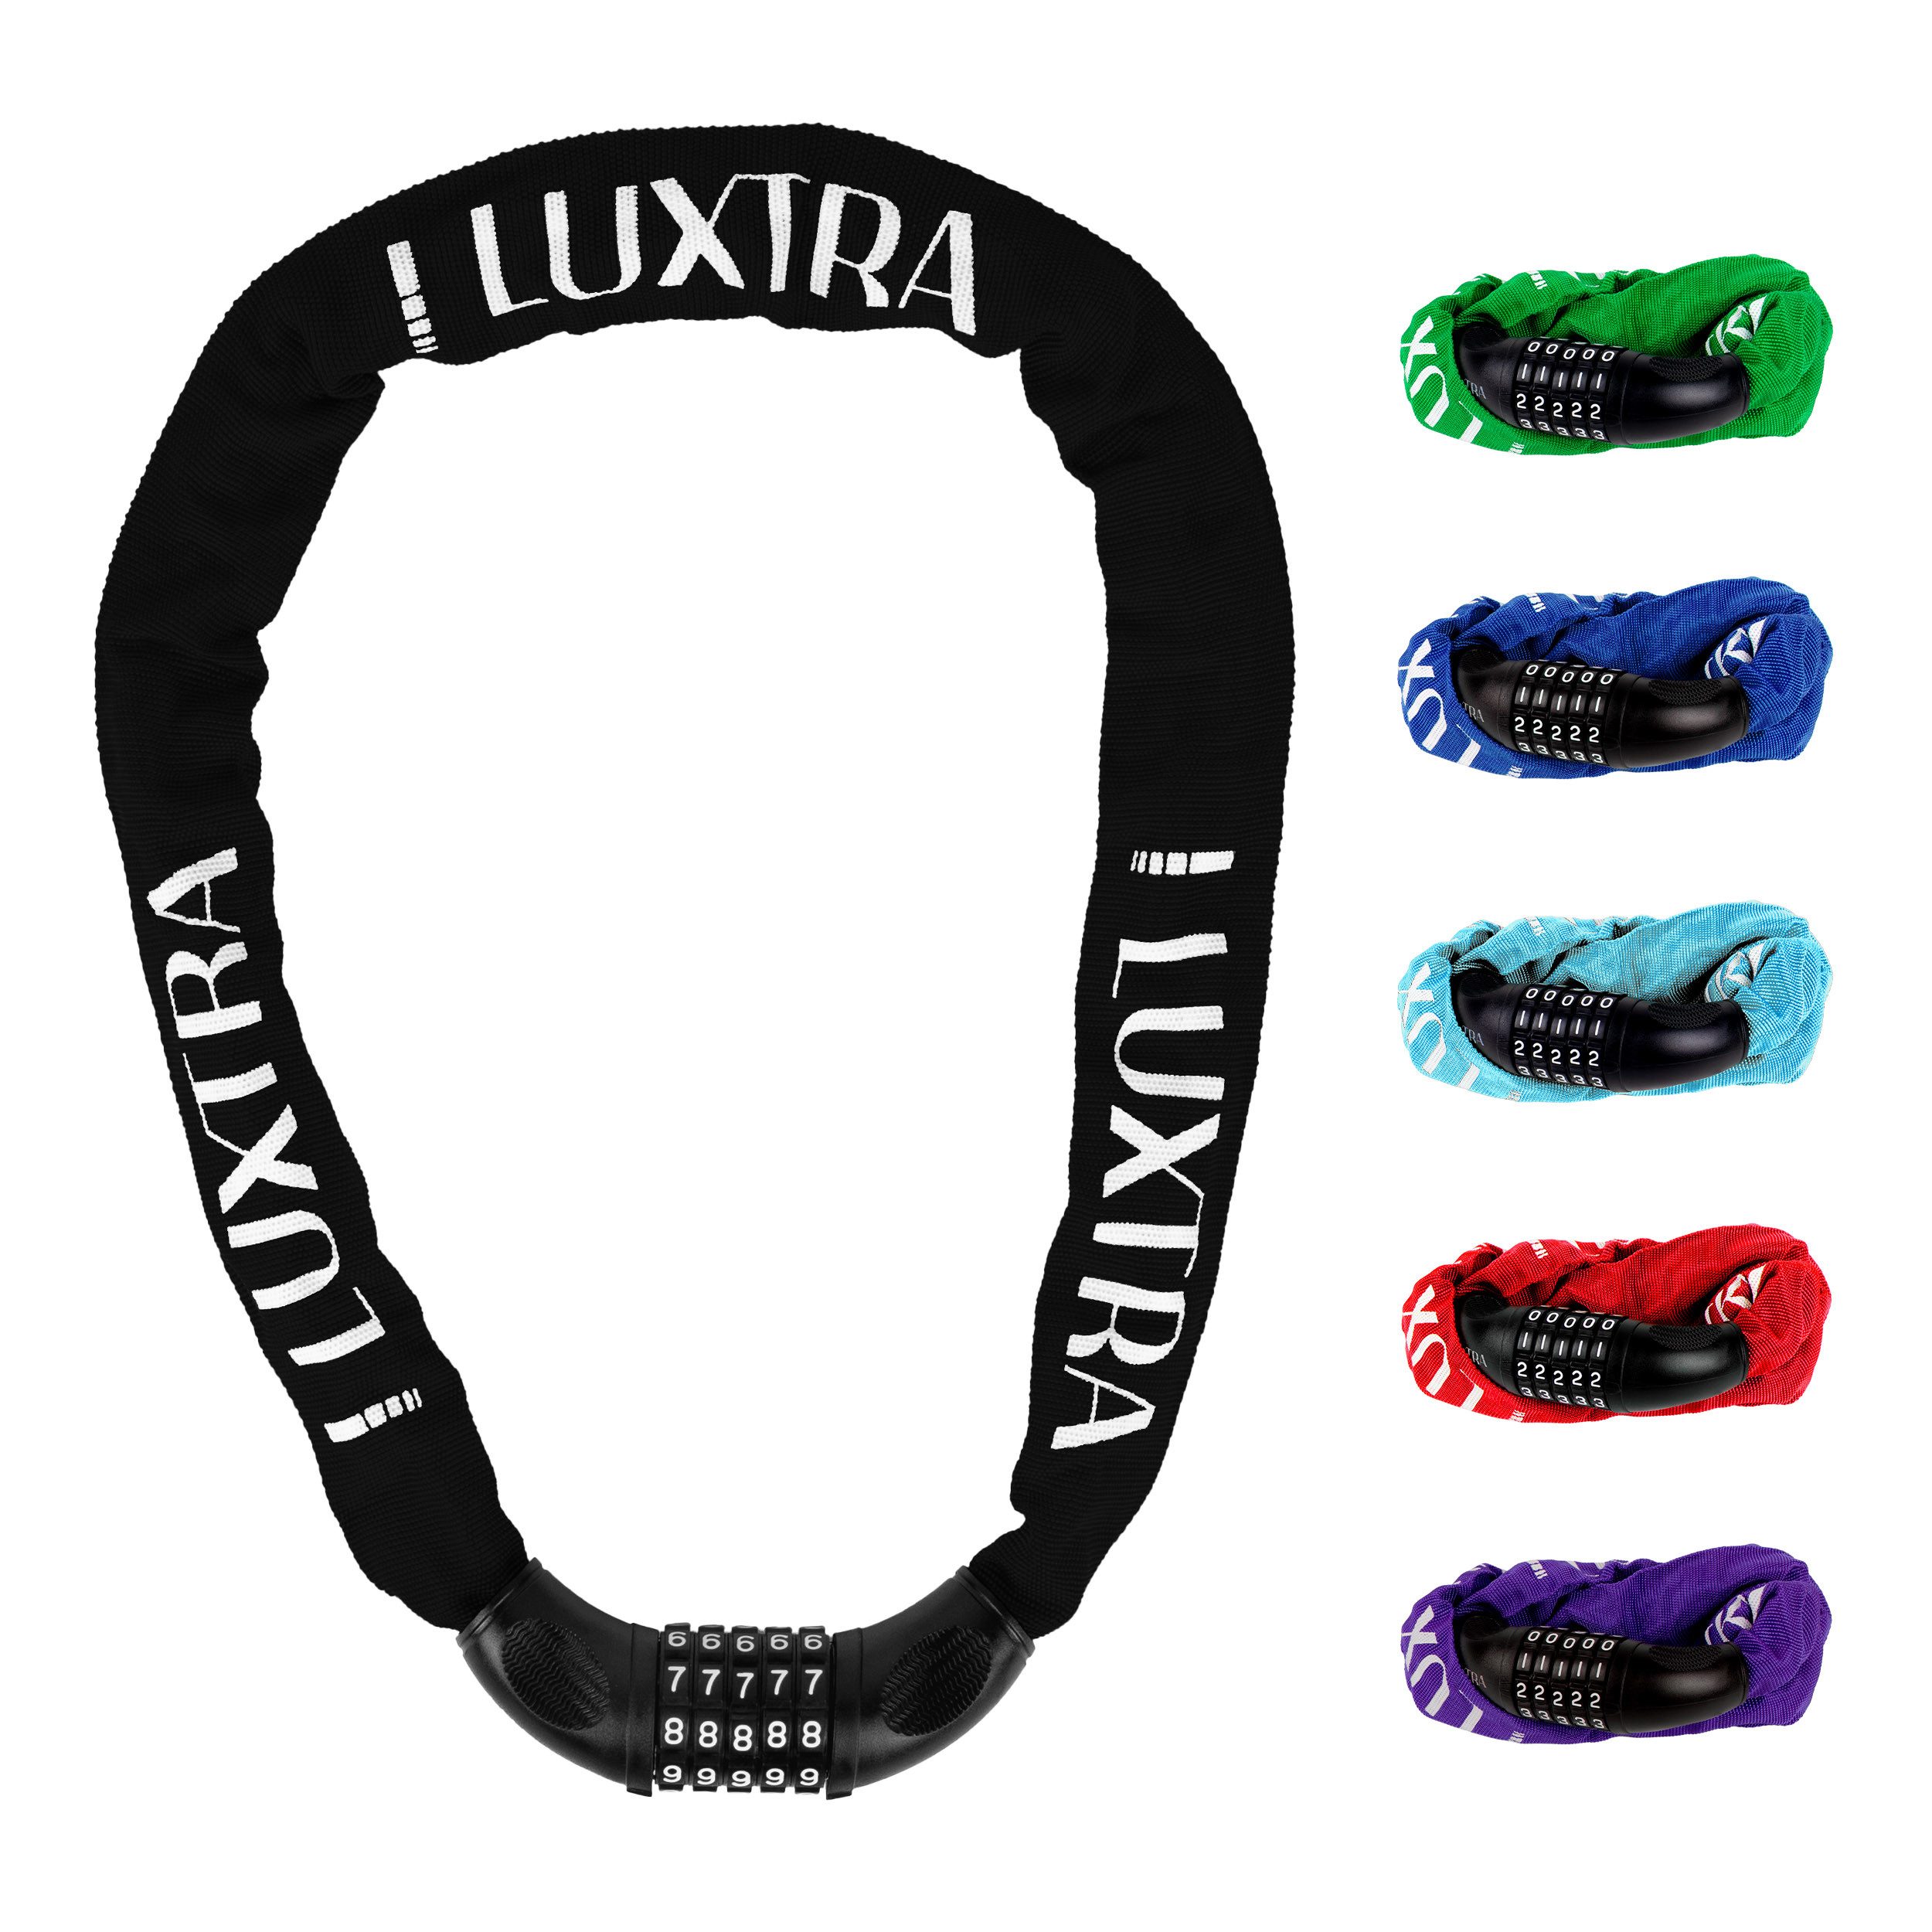 Luxtra Zahlenkettenschloss Fahrradschloss Zahlenkettenschloss mit Sicherheitscode, Schwarz, UV-beständige Nylonhülle